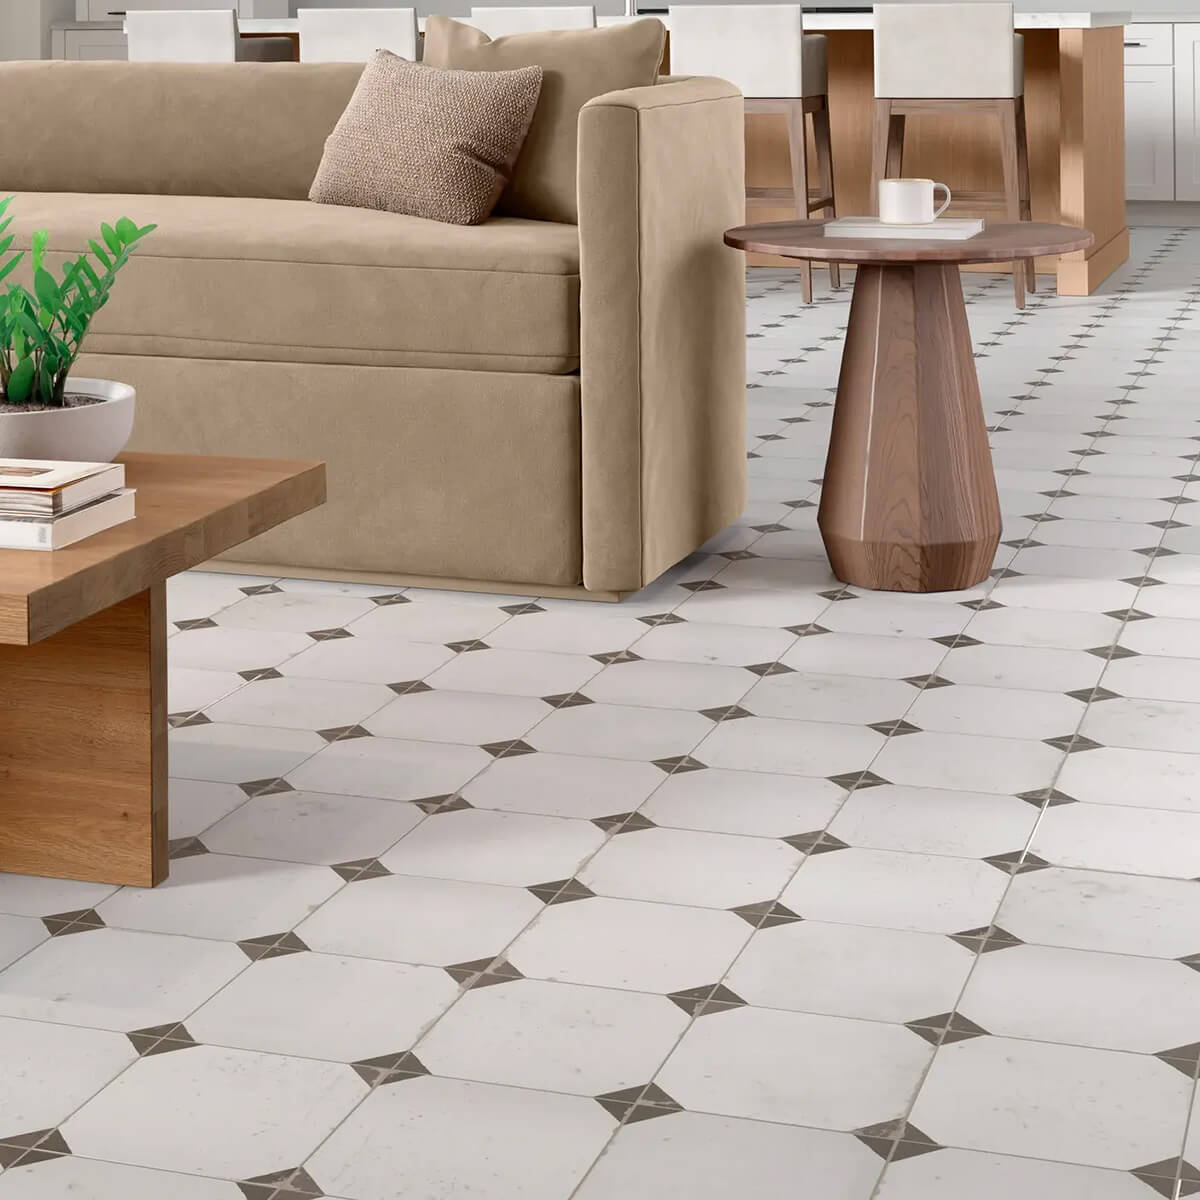 Tile flooring for living area | CarpetsPlus Of Wisconsin